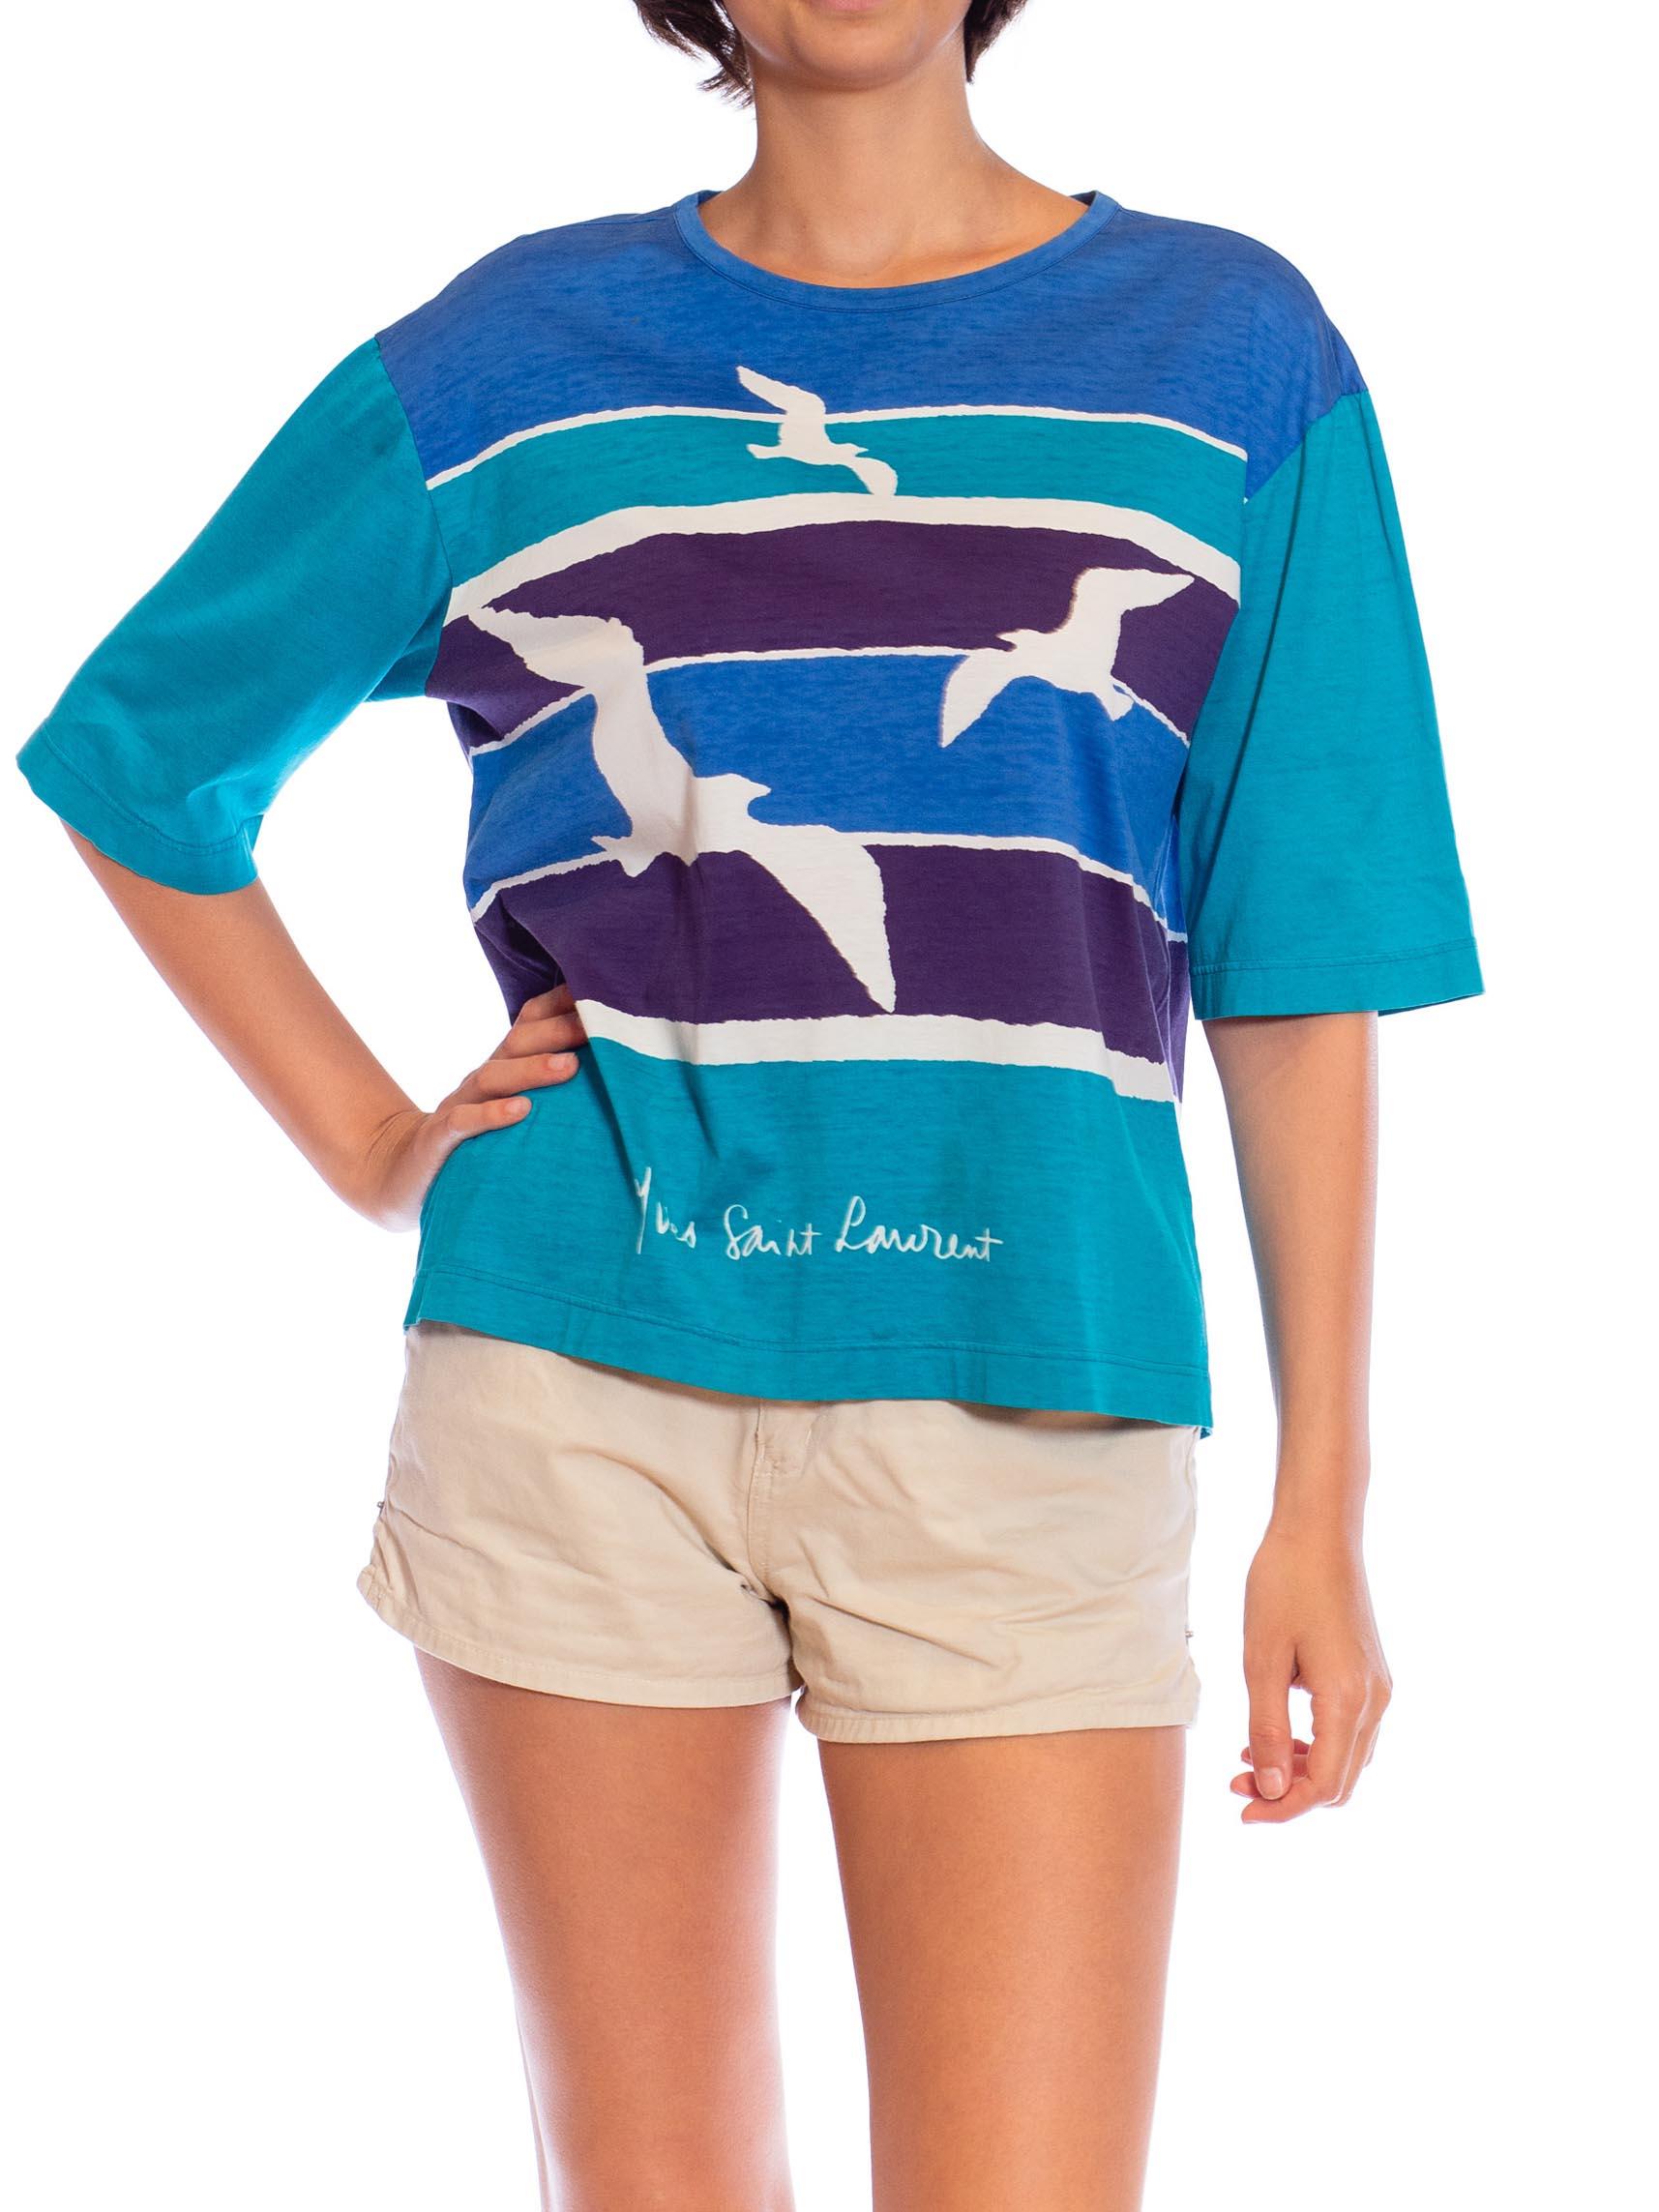 1970S YVES SAINT LAURENT Blue & Teal Cotton Jersey Rare Seashore Print T-Shirt For Sale 4